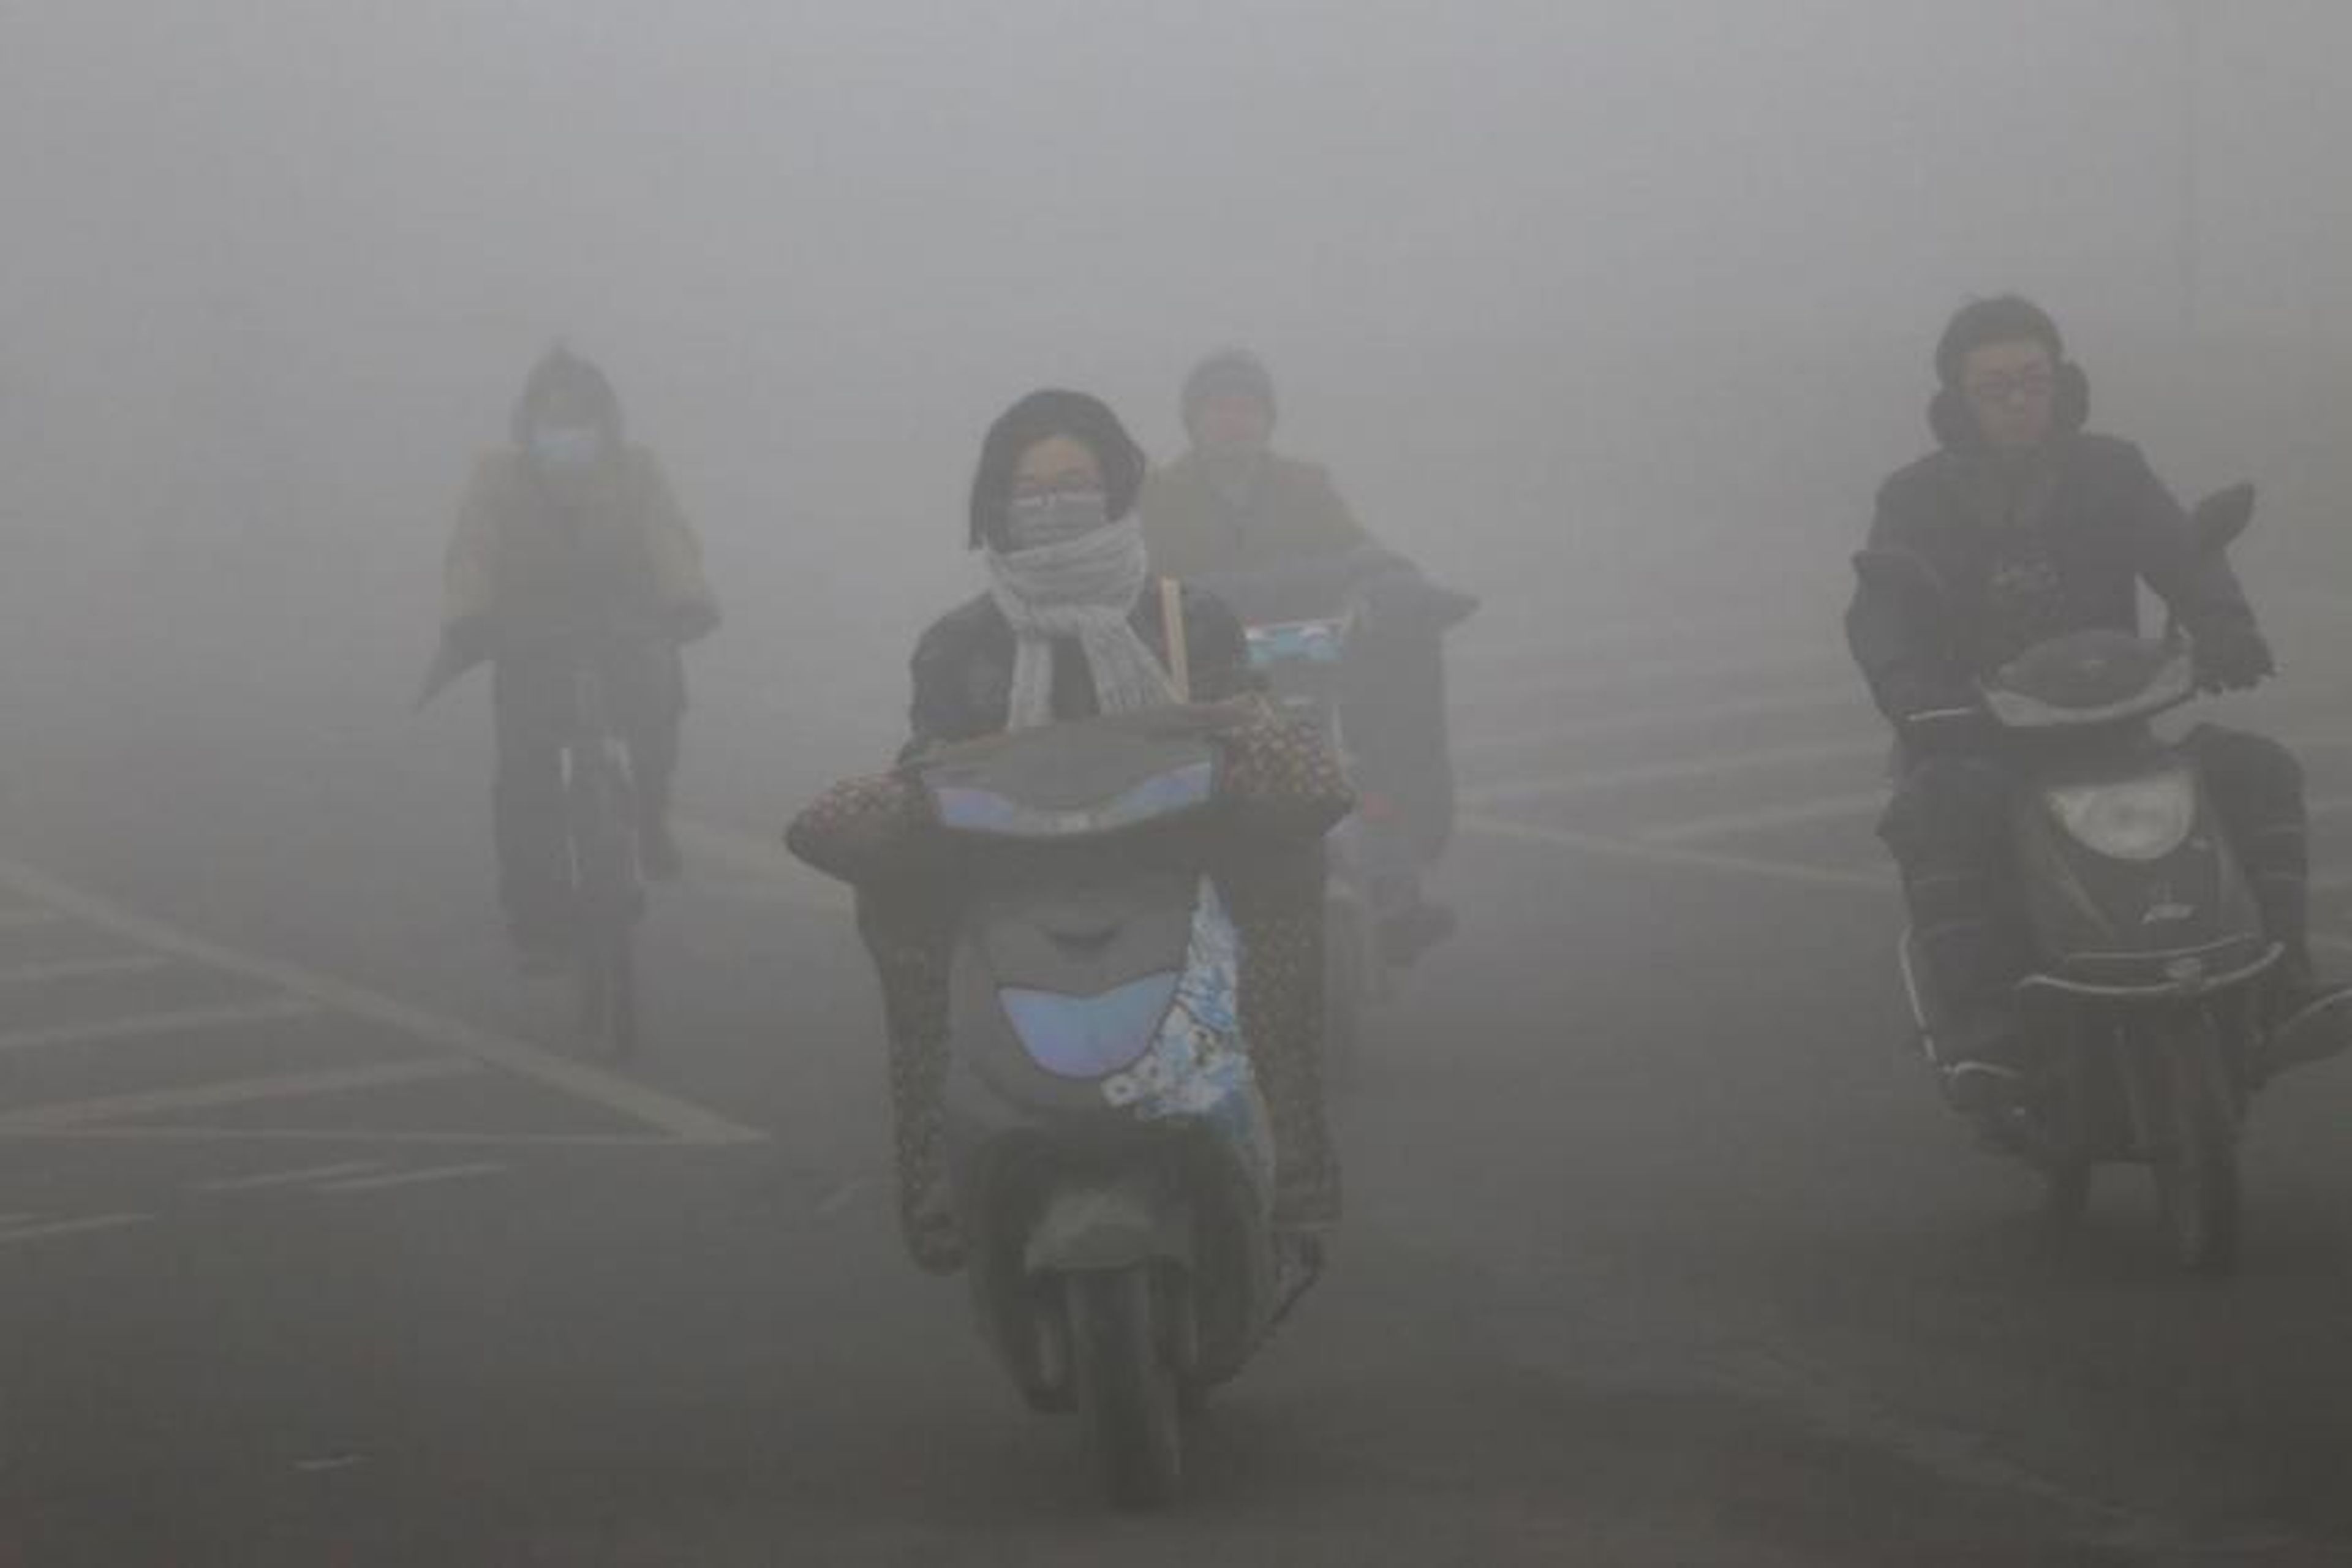 Ciclistas con máscaras viajan por una carretera con mucha niebla tóxica el 23 de diciembre de 2015 en Zhengzhou, China.